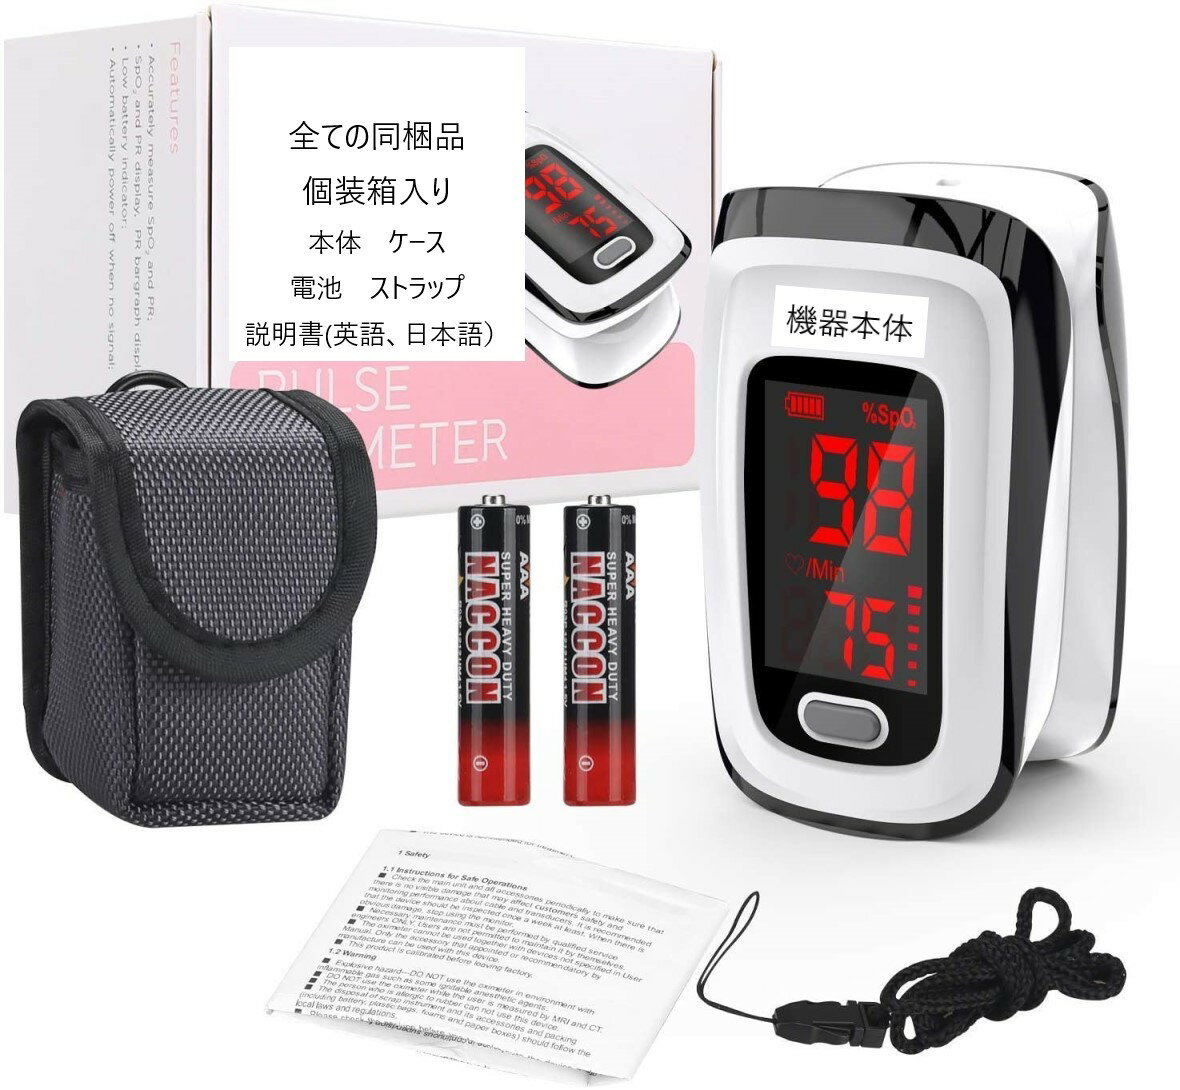 最新版 日本語説明書, 電池付 血中酸素飽和度測定器 血中酸素濃度測定器 ポータブル portable 携帯用 日常用 スポーツ アウトドア活動用 SpO2測定 在宅 介護 家庭用 ＊特定保守管理医療機器としての パルスオキシメーター ではありません。